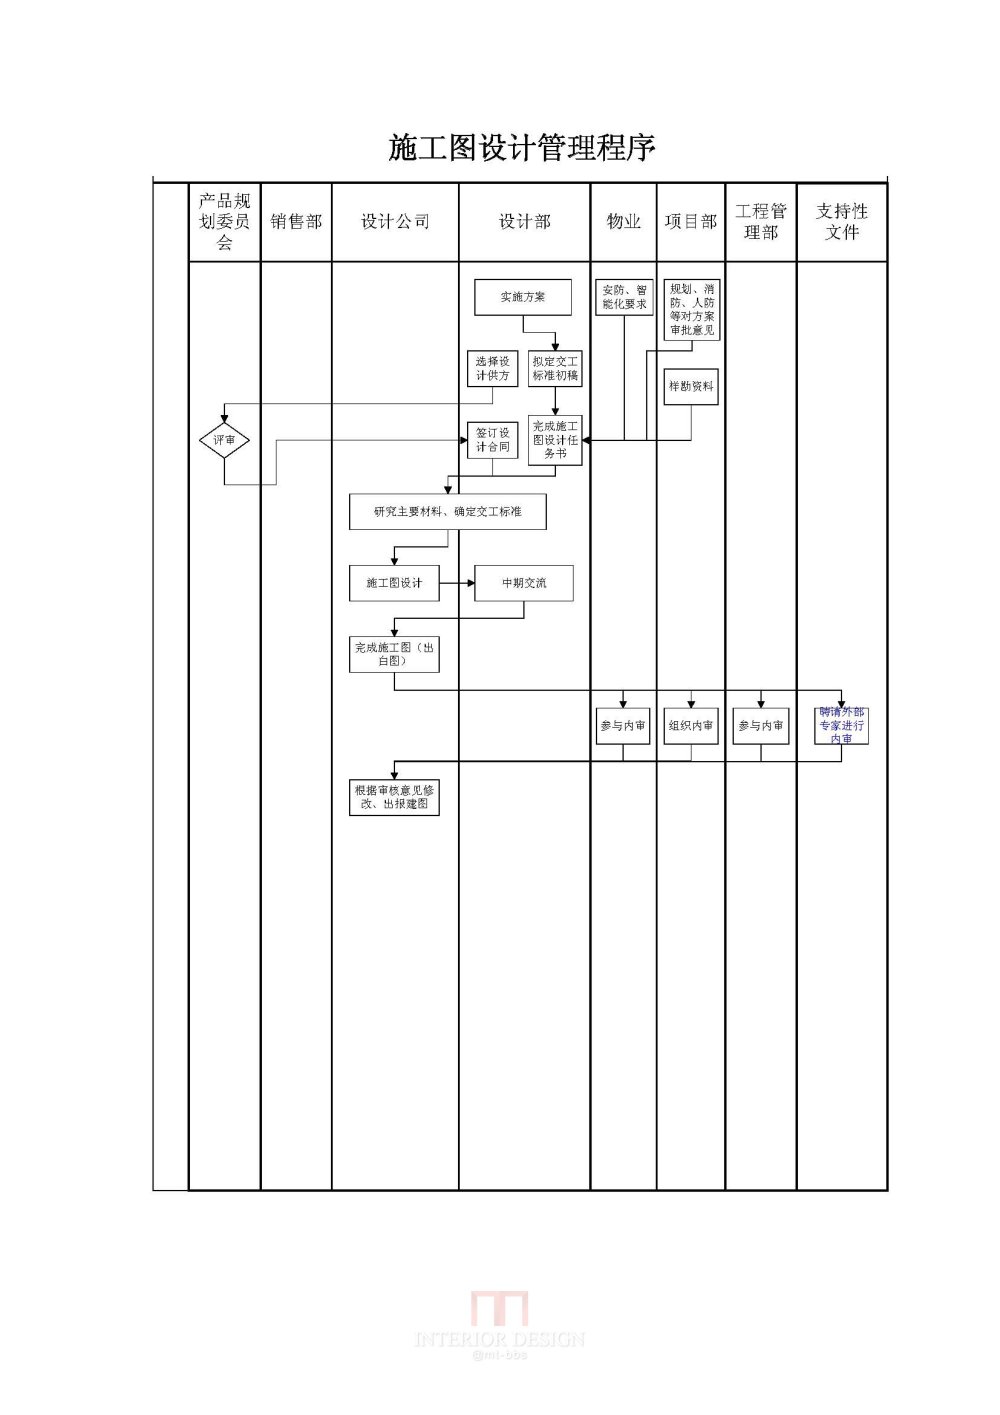 施工图设计管理程序_4-BR-QP2-PR004.jpg